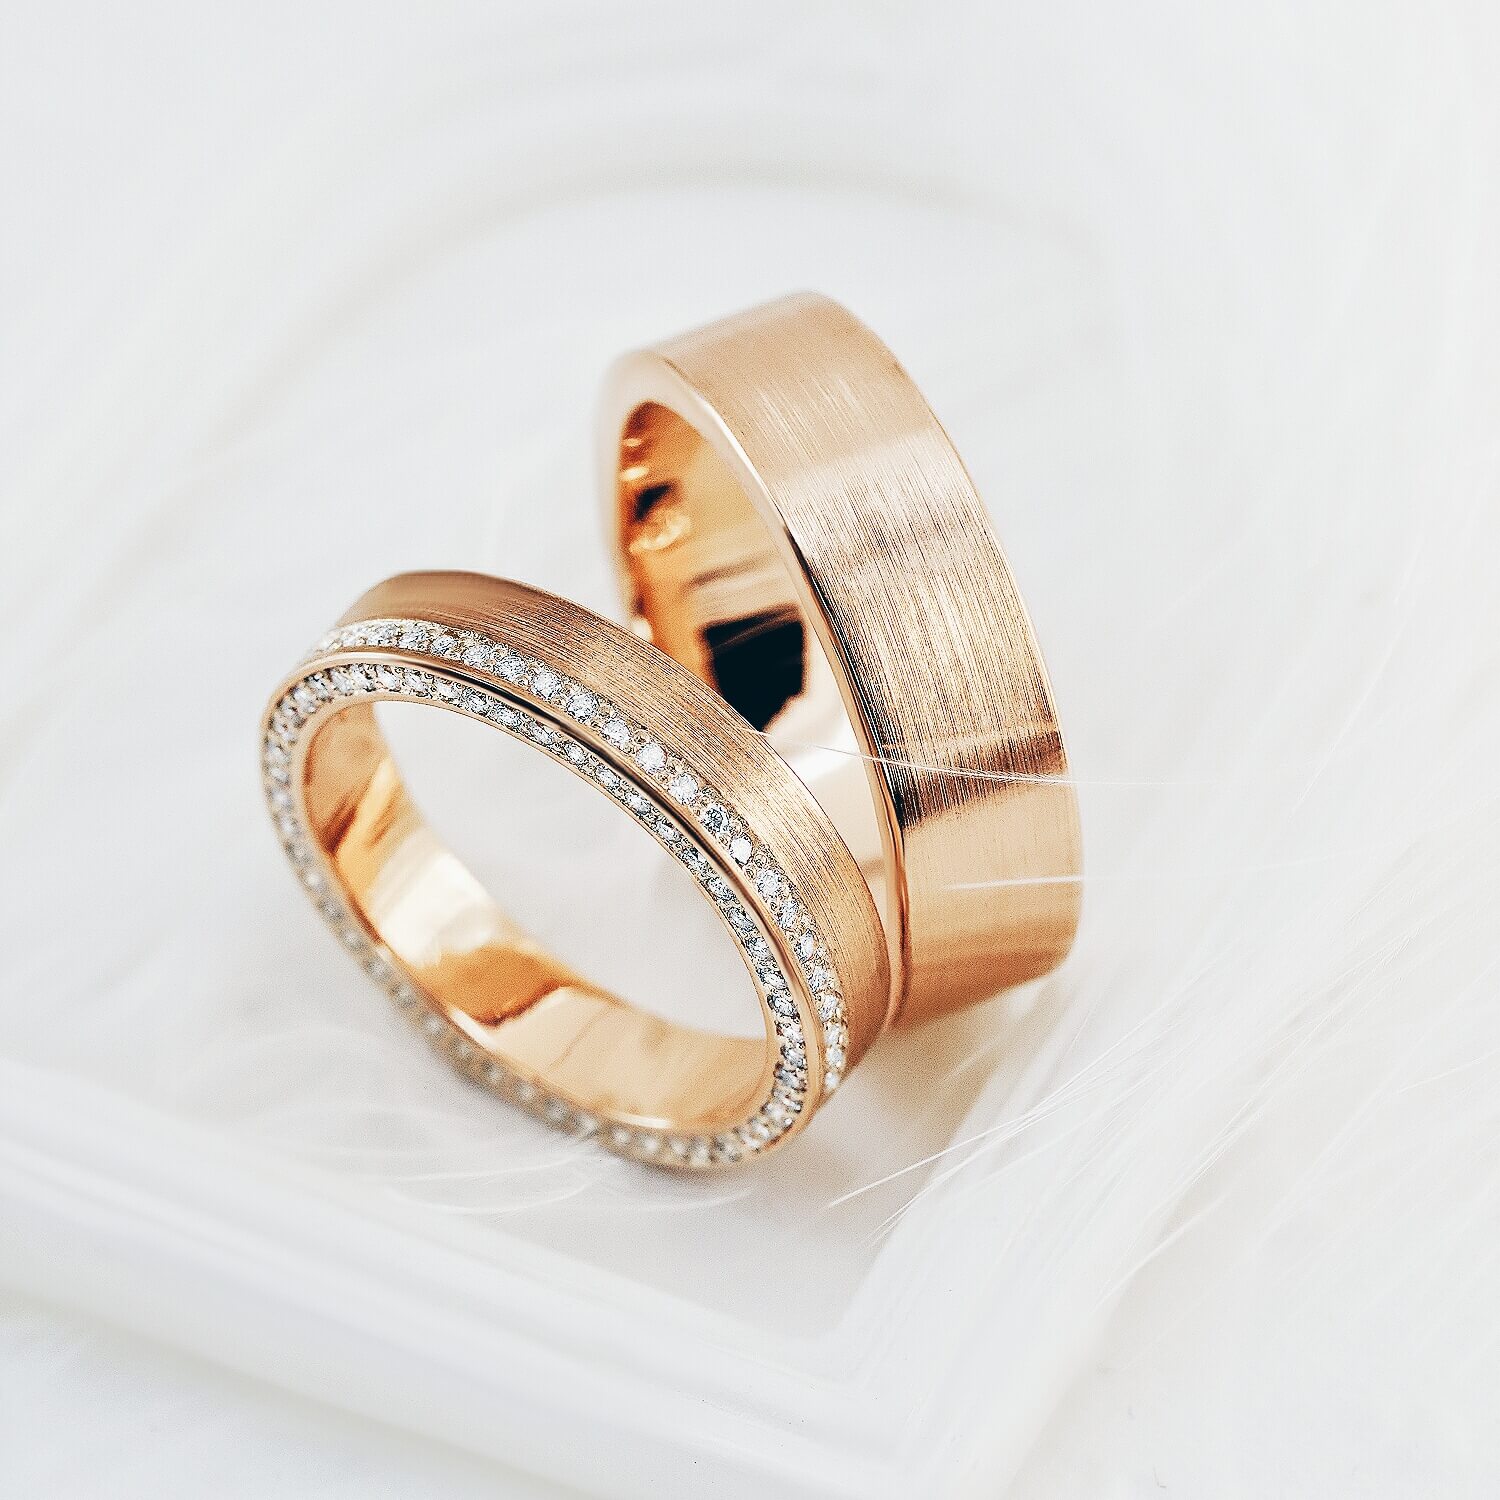 Современная классика: обруальные кольца с актуальной сатиновой фактурой и бриллиантами